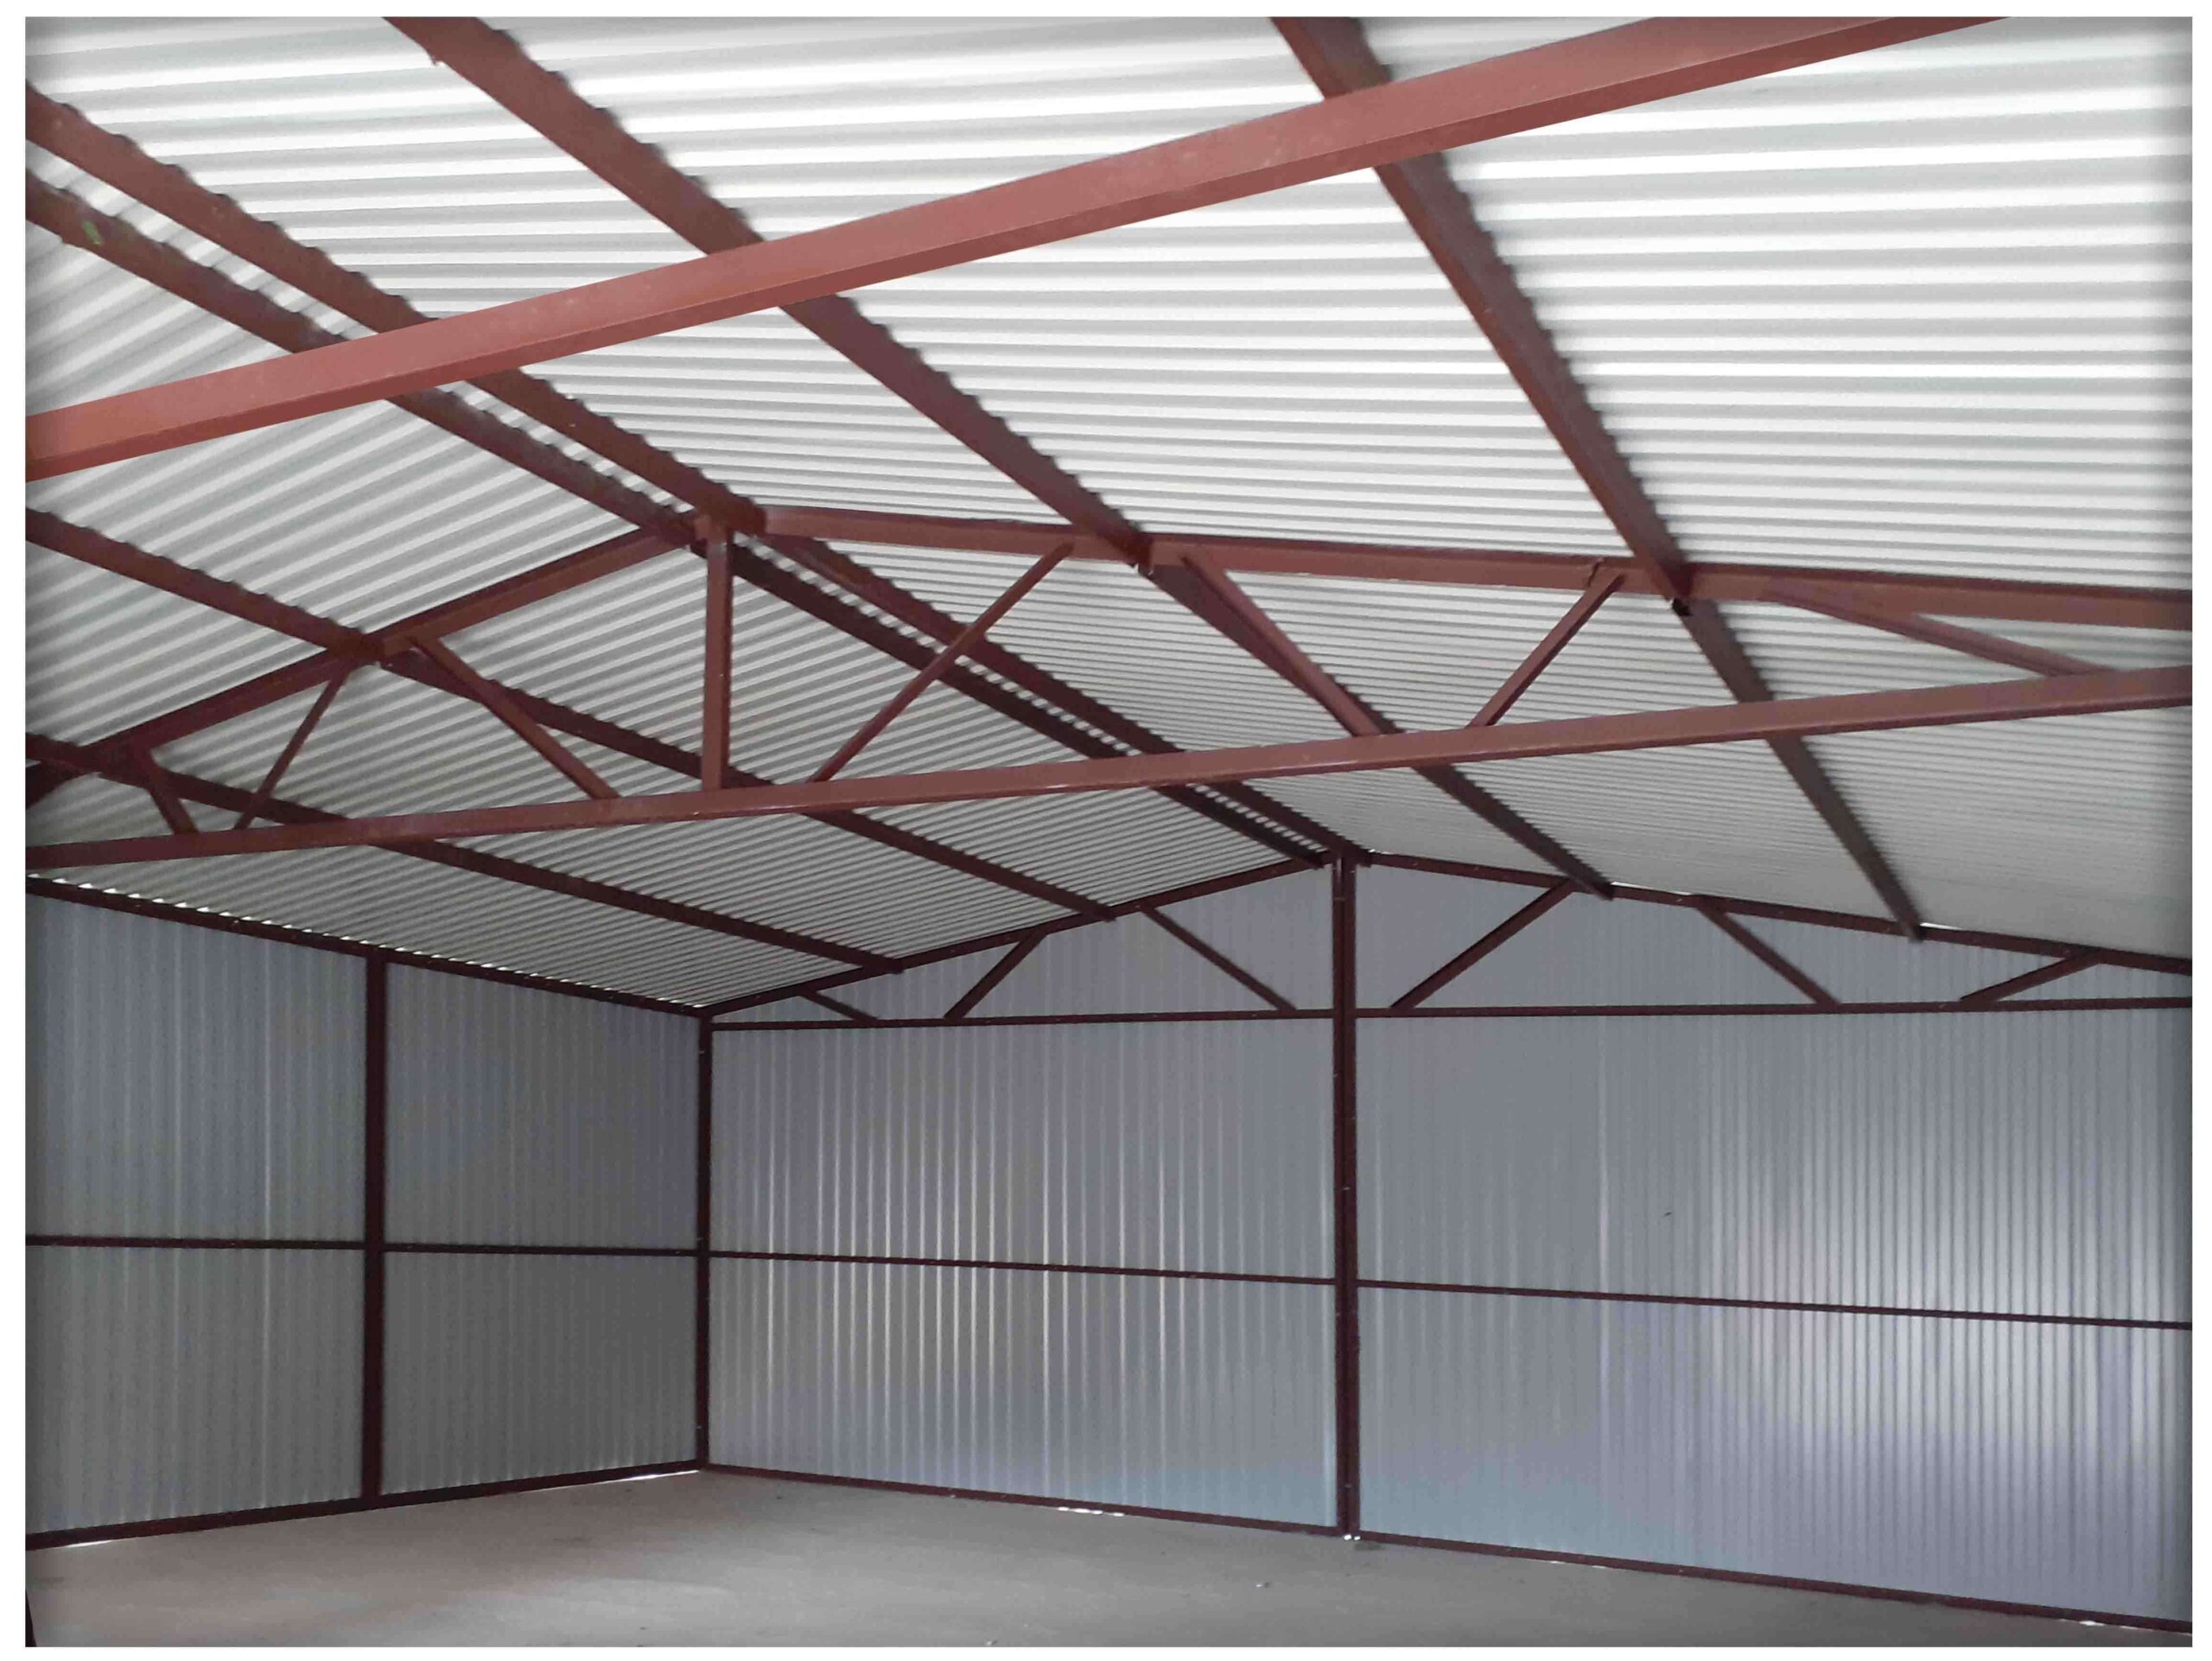 konstrukce garáž 6x6 m - sedlová střecha